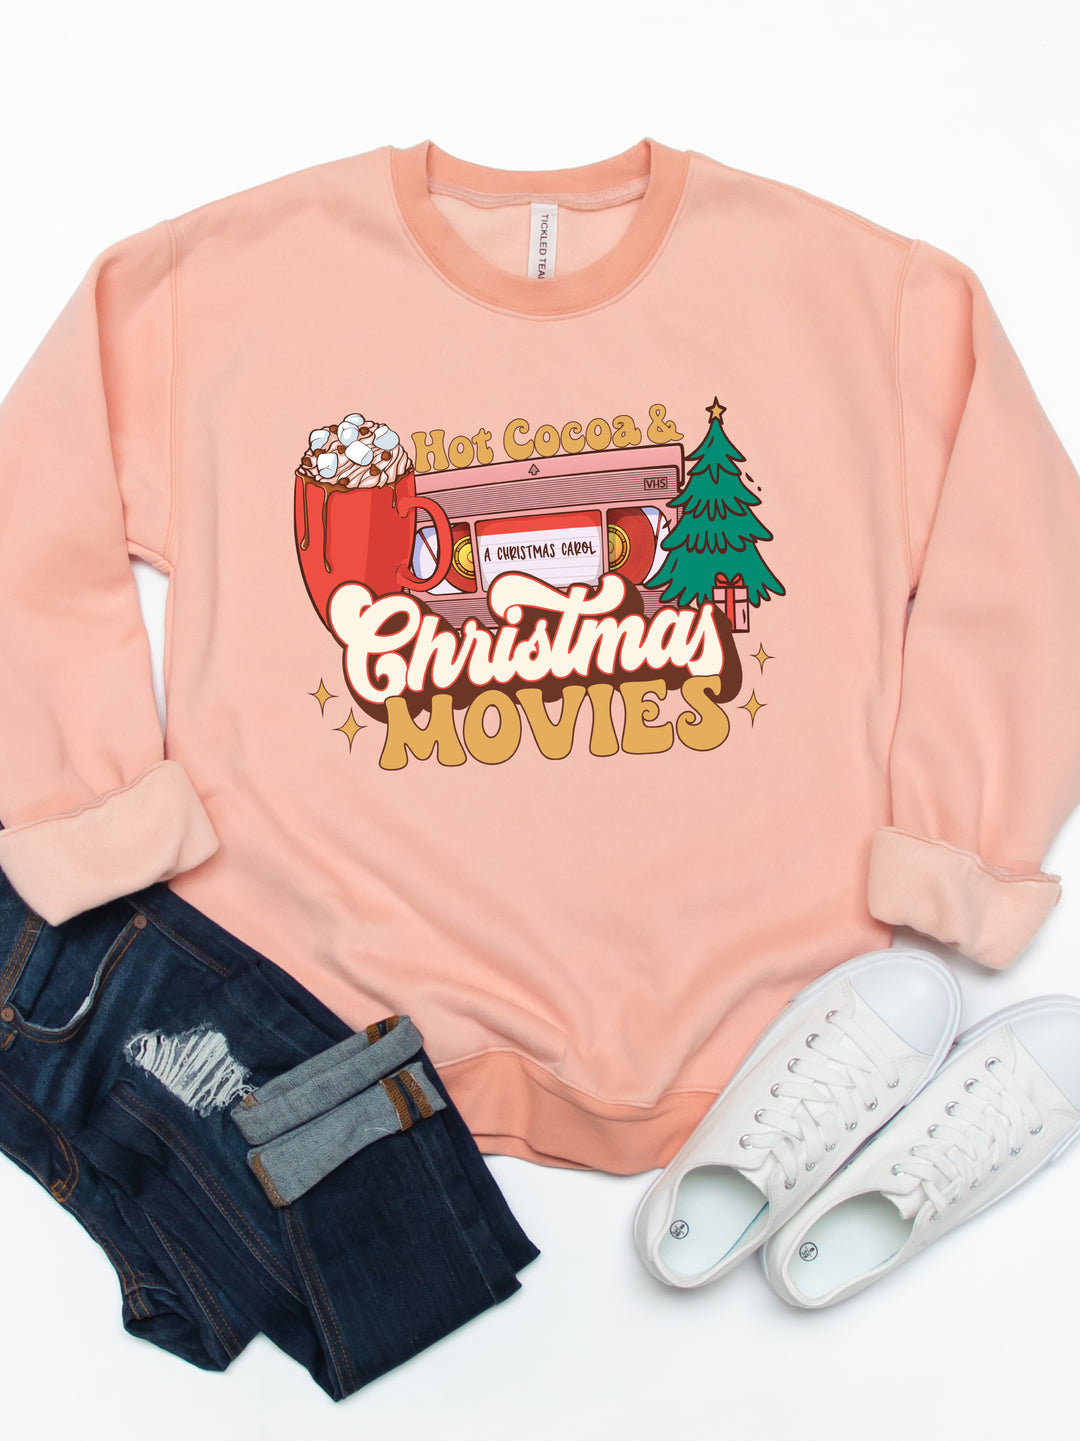 Hot Chocolate & Christmas Movies Graphic Sweatshirt